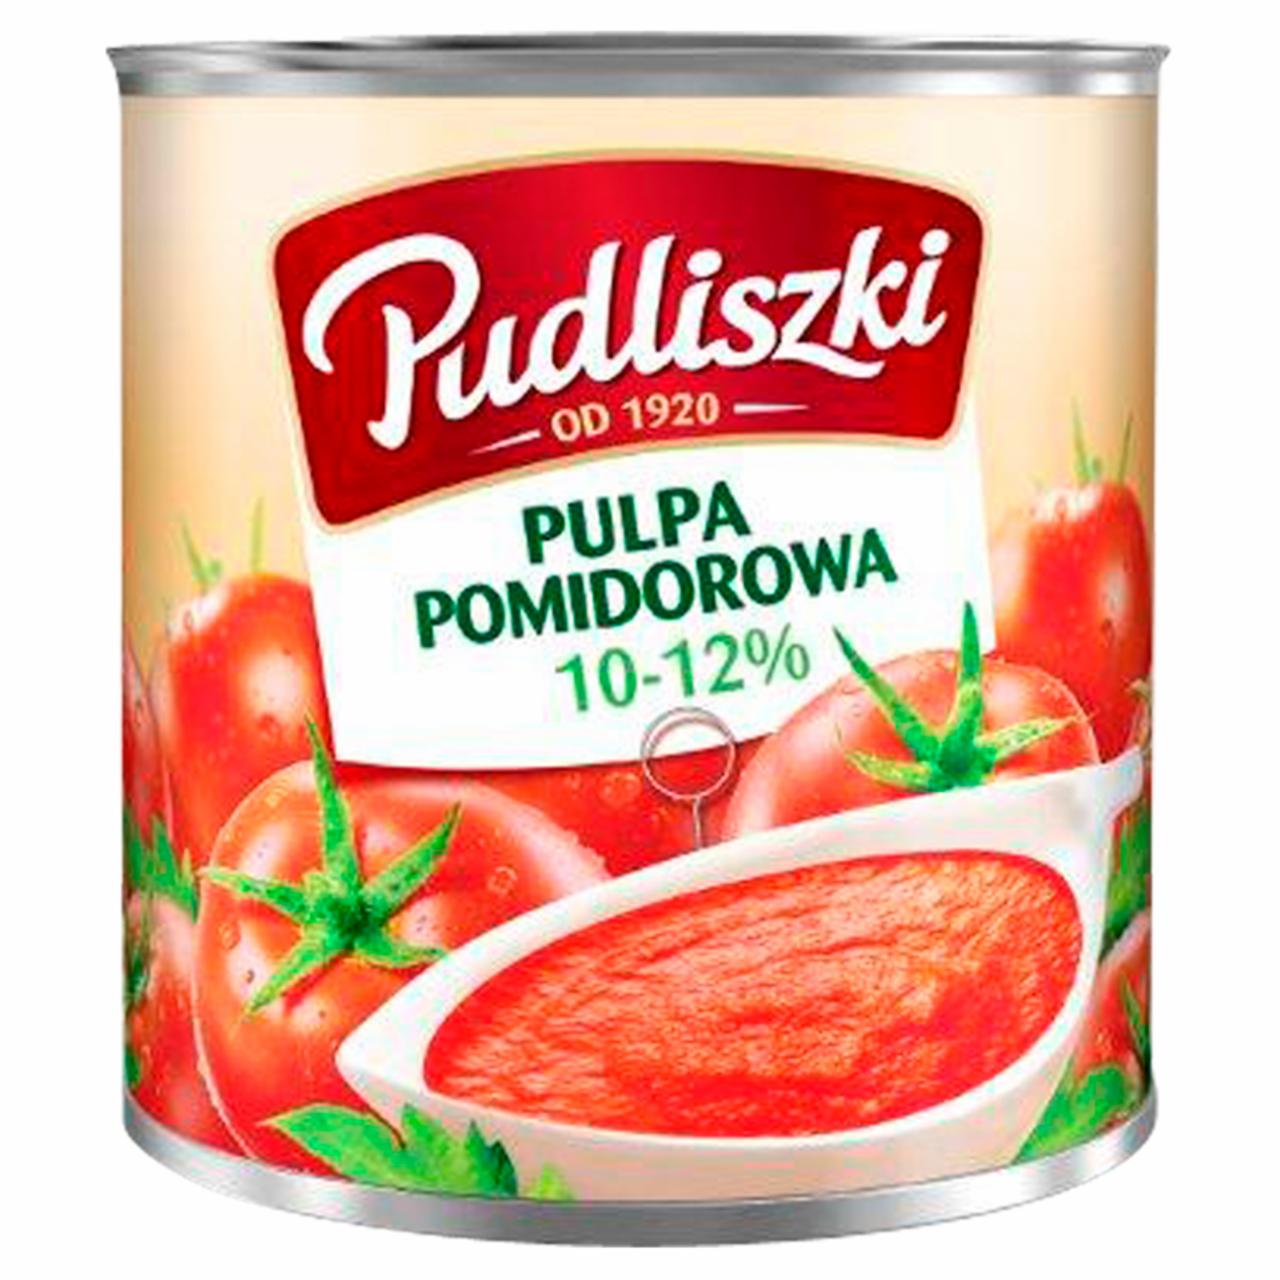 Zdjęcia - Pudliszki Pulpa pomidorowa 10-12% 2,5 kg